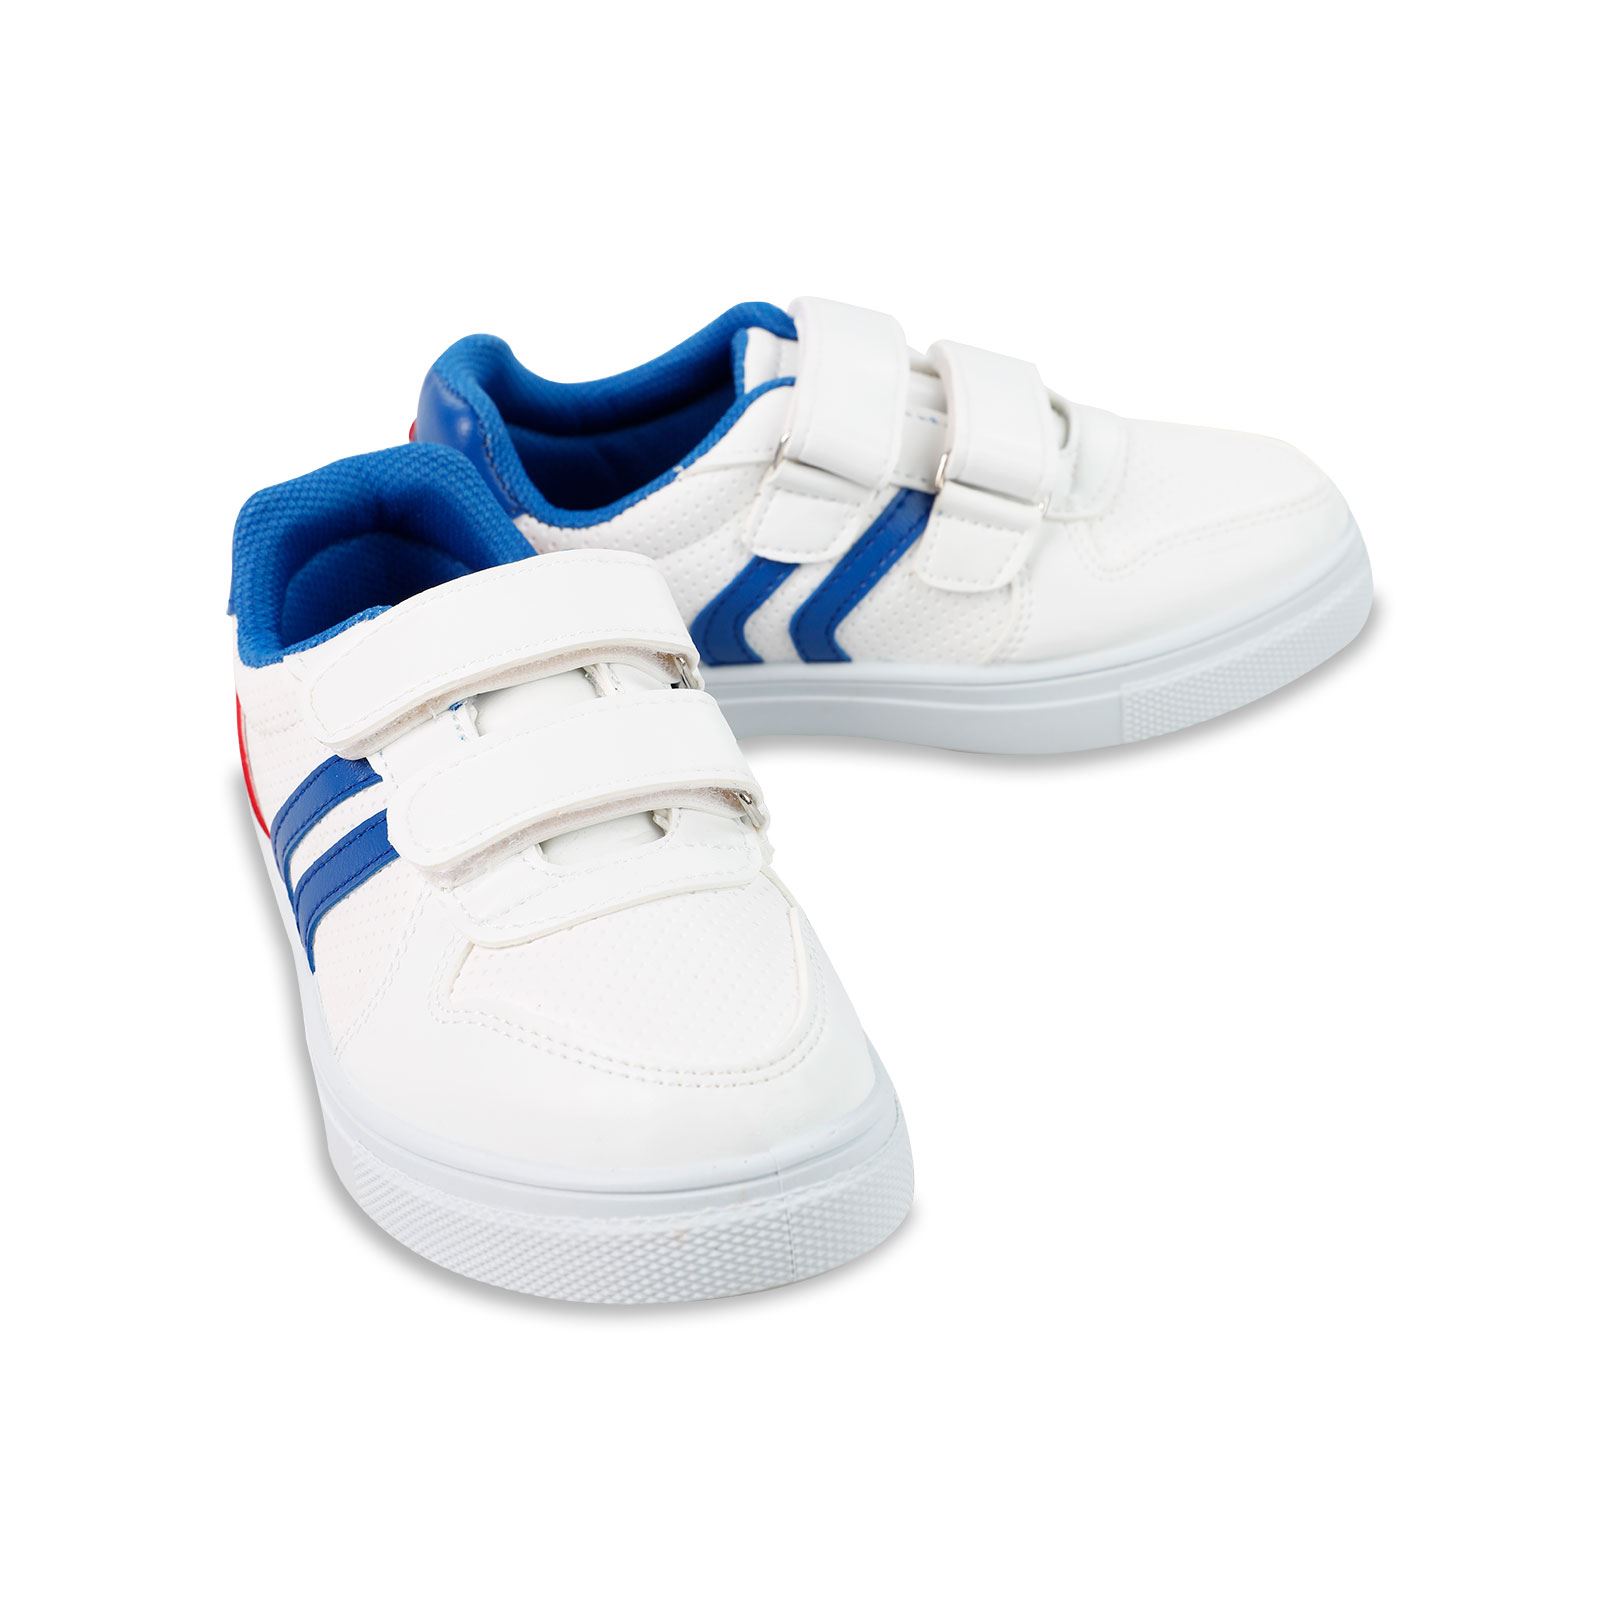 Polaris Erkek Çocuk Spor Ayakkabı 31-35 Numara Beyaz